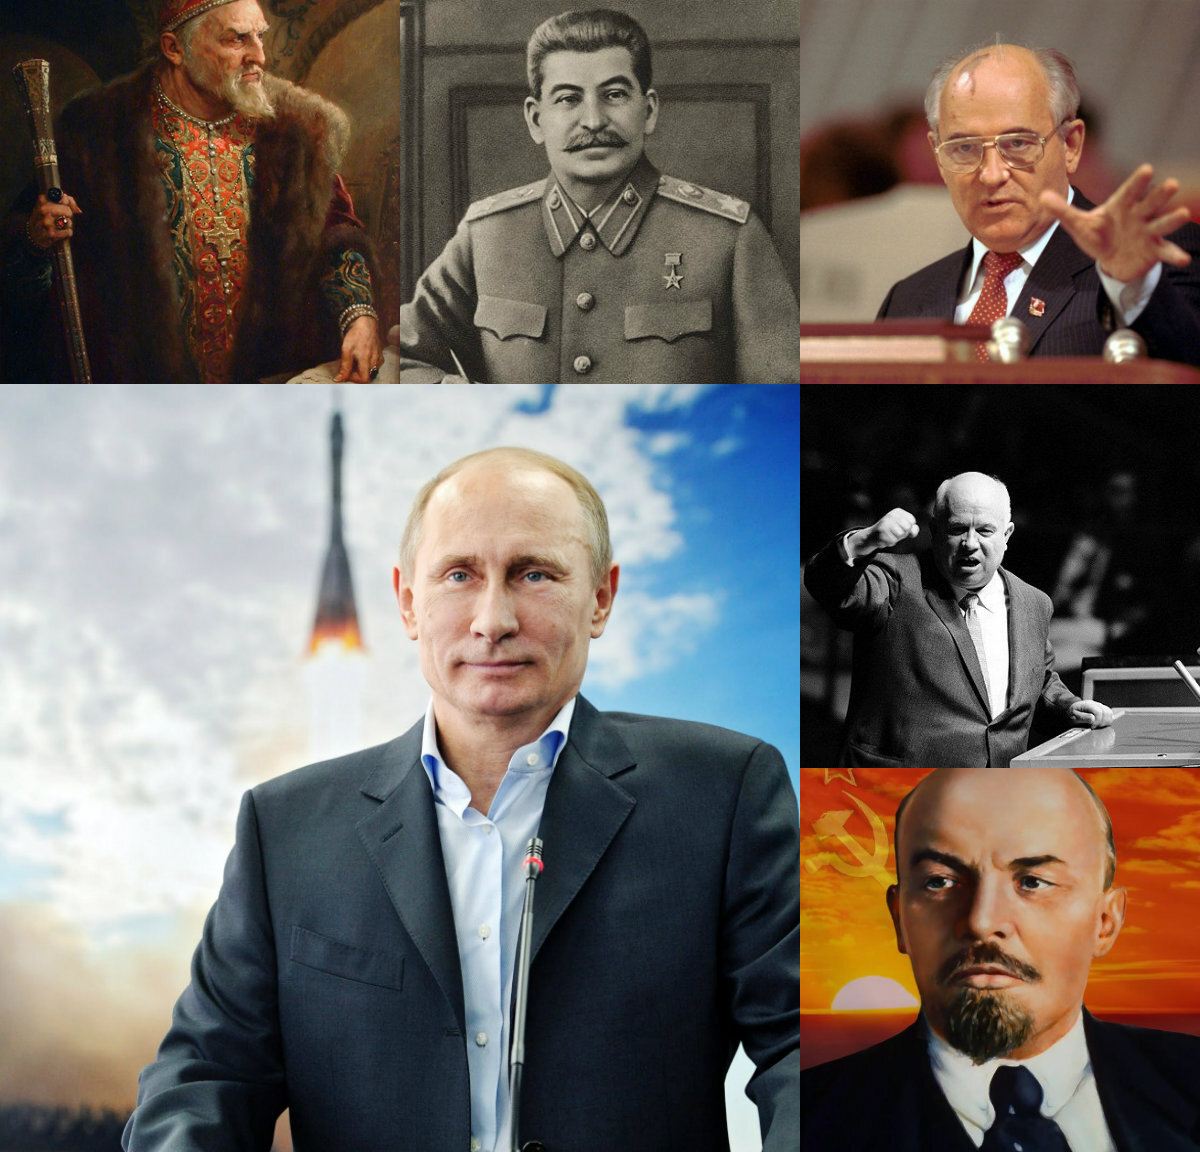 Главы правления россии